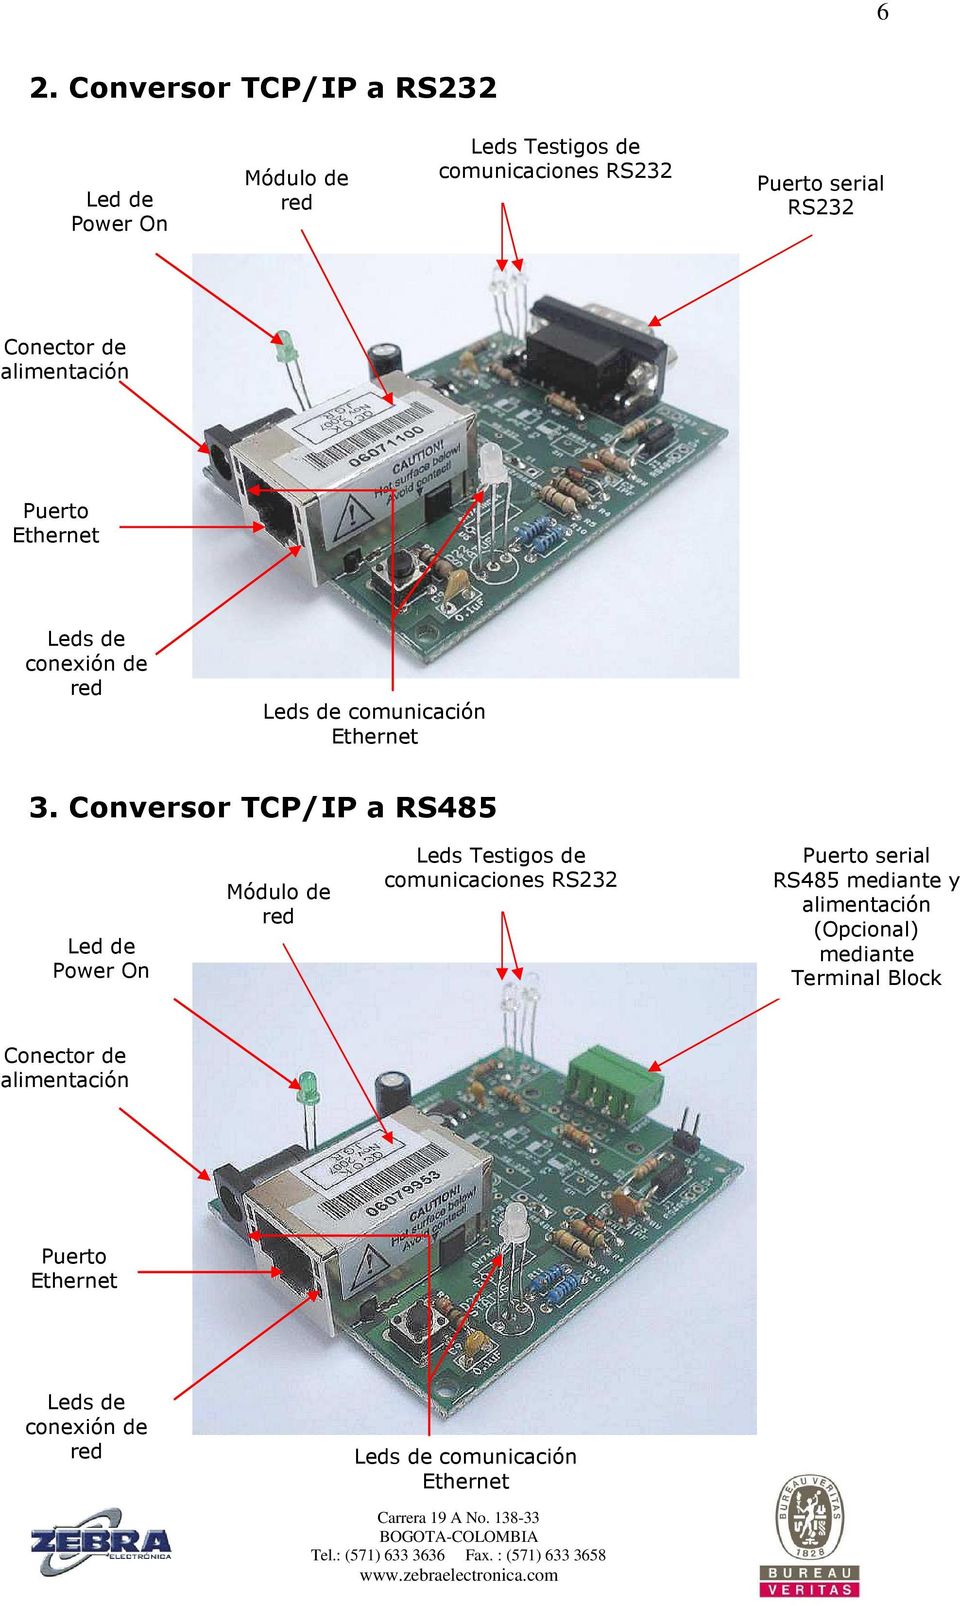 Conversor TCP/IP a RS485 Led de Power On Módulo de red Leds Testigos de comunicaciones RS232 Puerto serial RS485